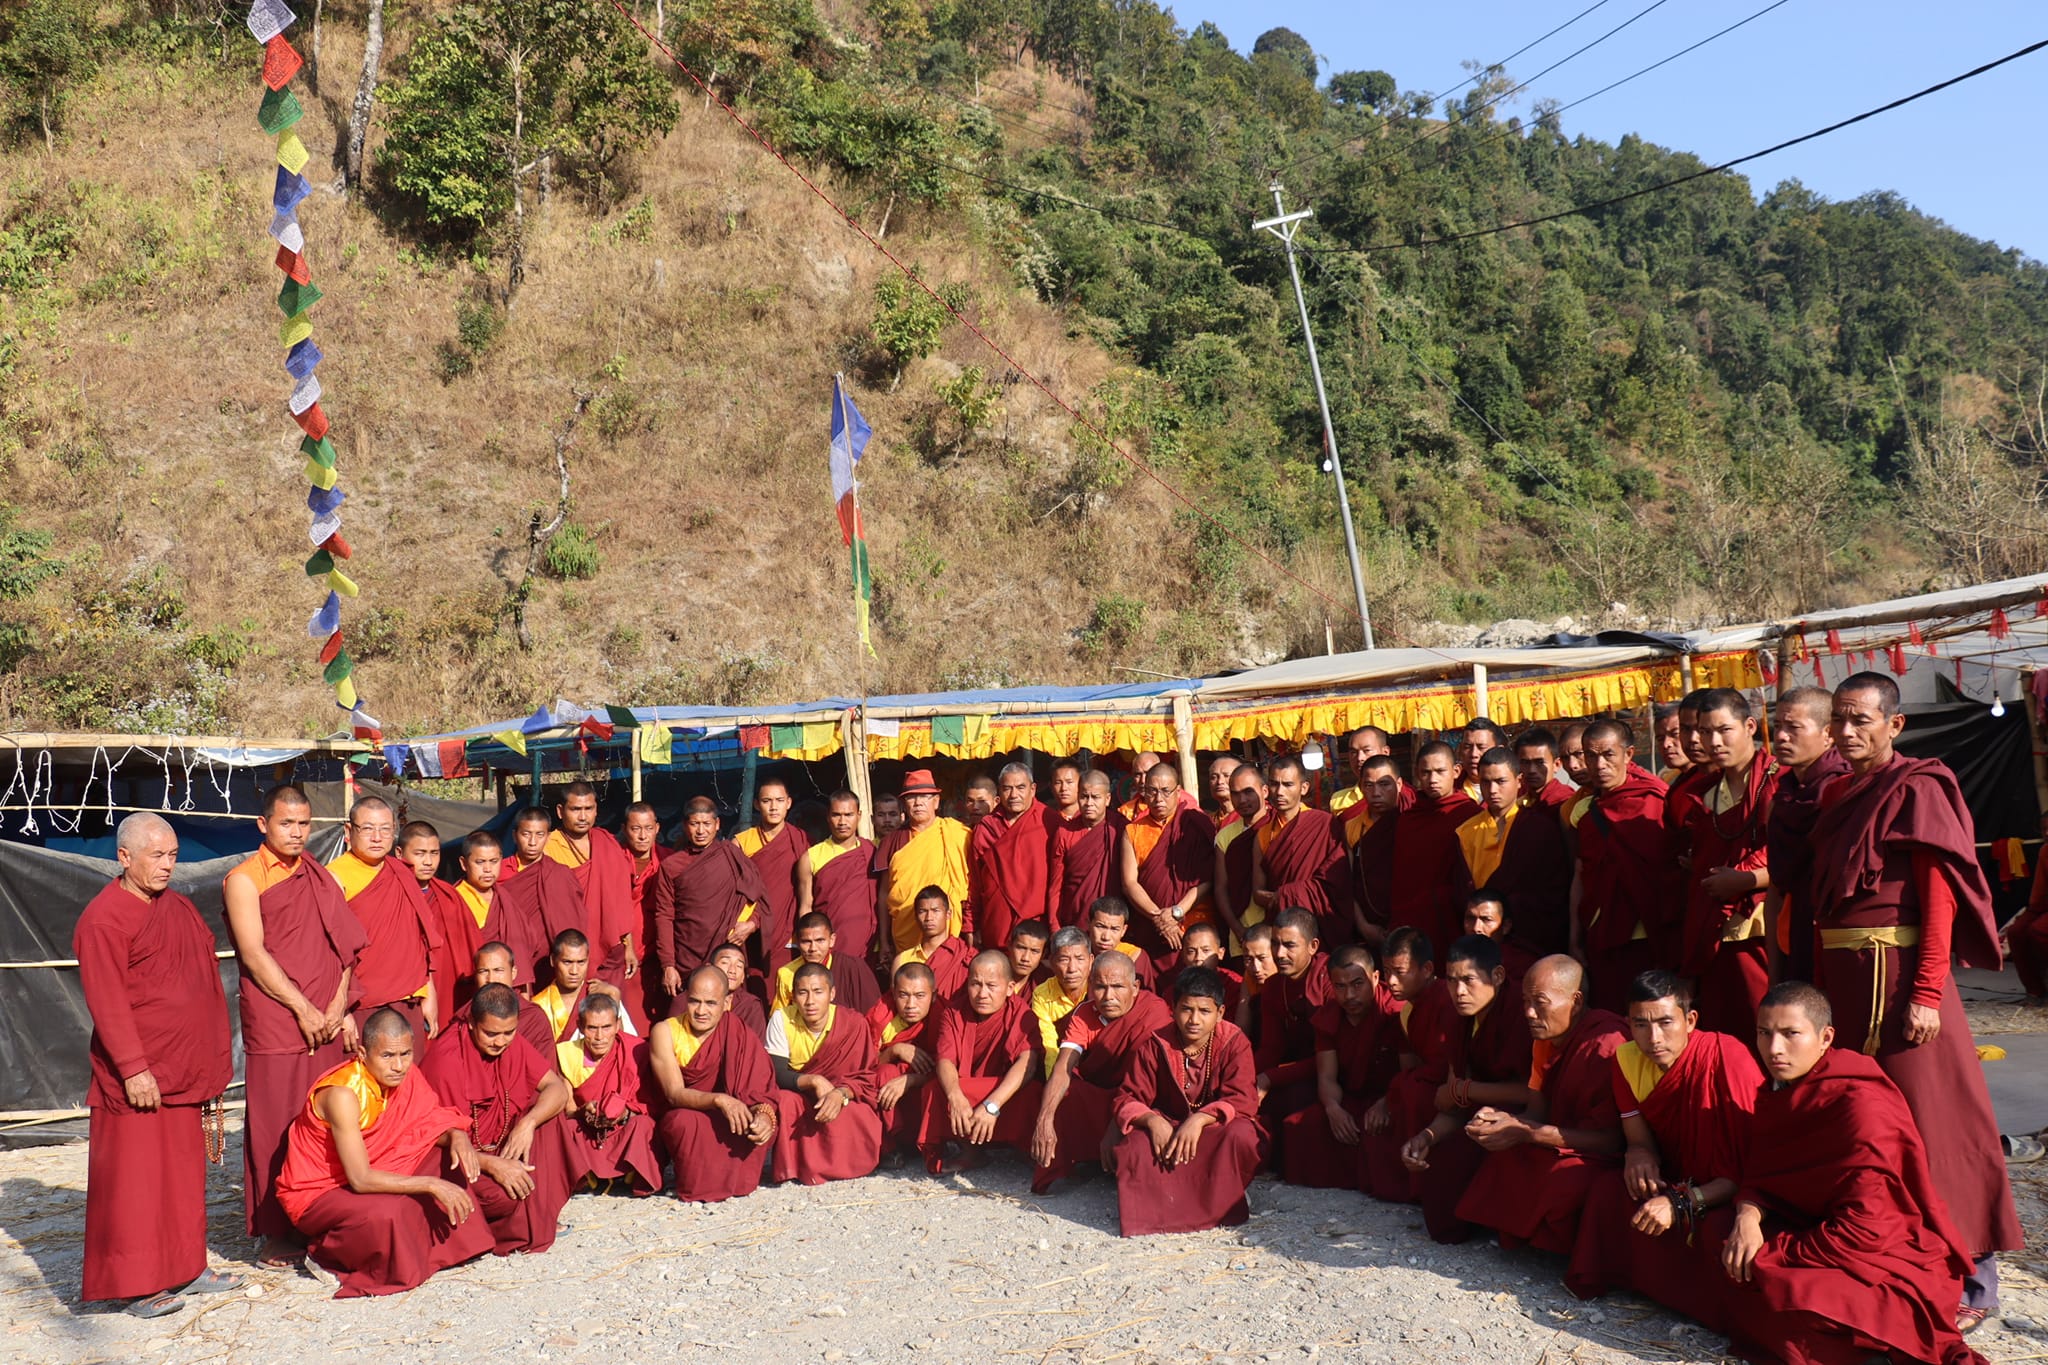 खानीखोला तालढुङ्गामा  शान्ति र अहिंसाका लागि प्रार्थना गर्दै बौद्ध धर्मावलम्बी लामा गुफाभित्र